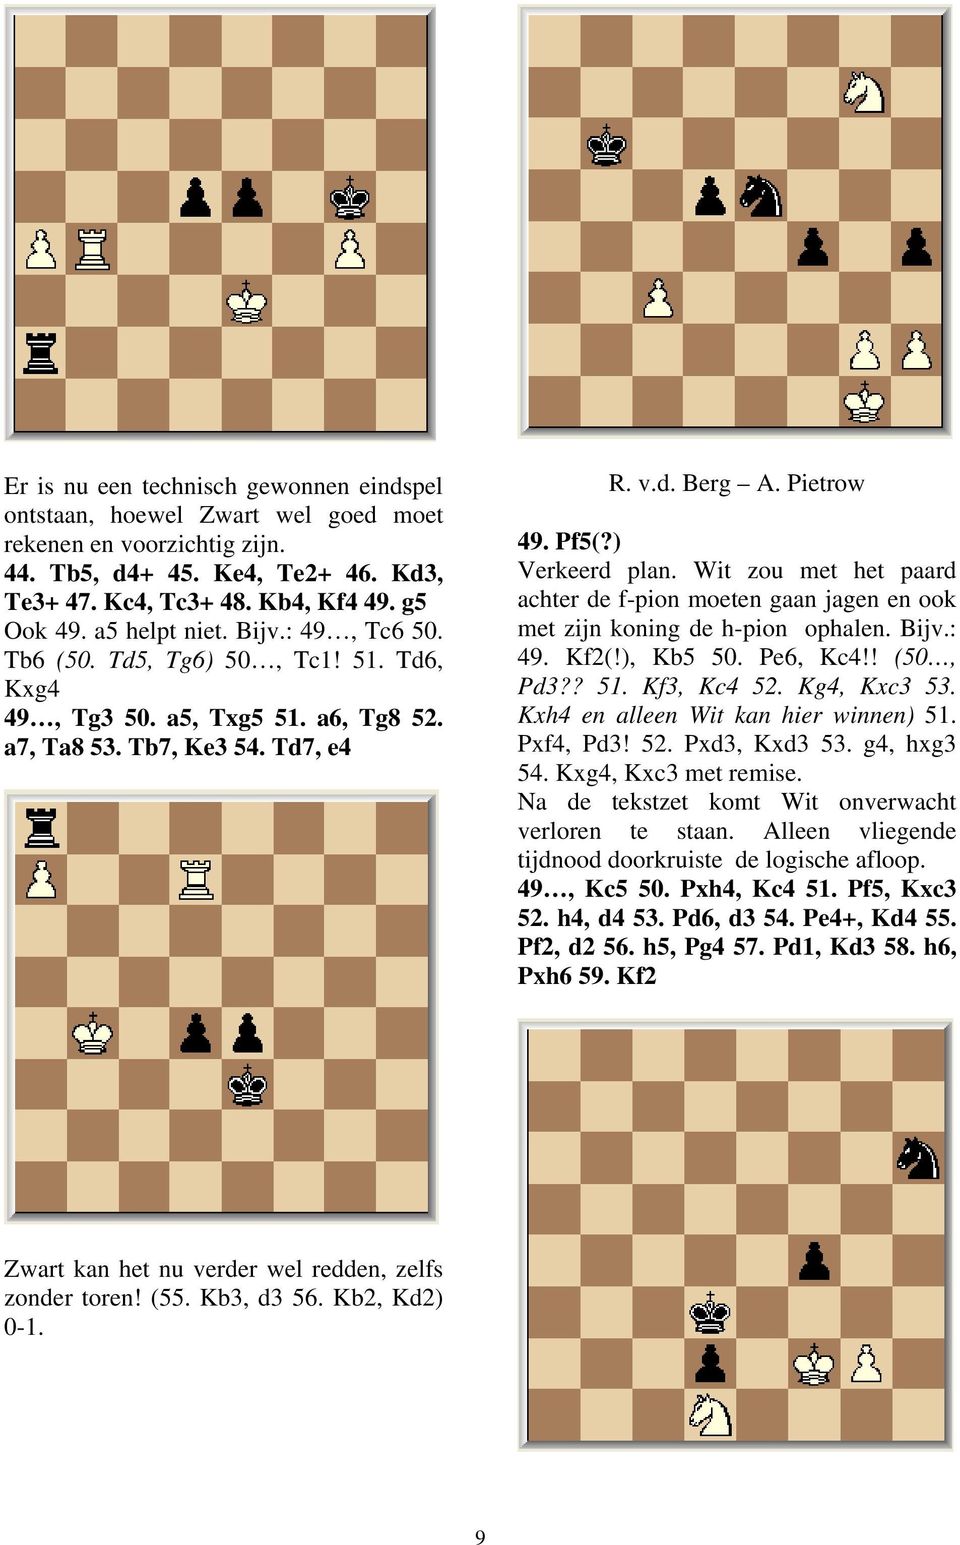 Wit zou met het paard achter de f-pion moeten gaan jagen en ook met zijn koning de h-pion ophalen. Bijv.: 49. Kf2(!), Kb5 50. Pe6, Kc4!! (50, Pd3?? 51. Kf3, Kc4 52. Kg4, Kxc3 53.